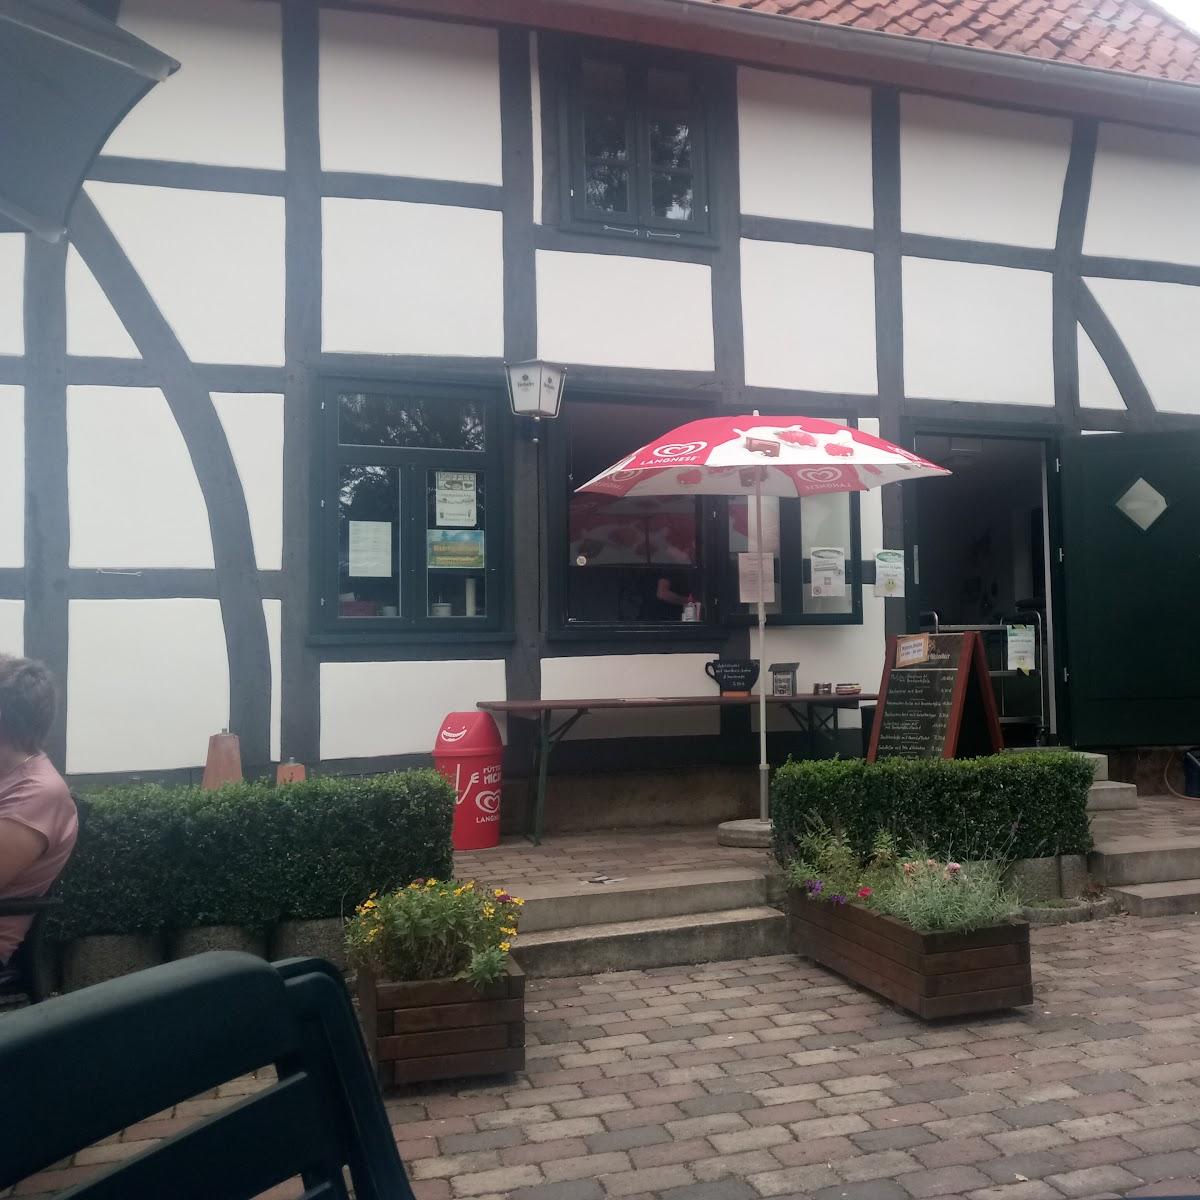 Restaurant "Kastanienhof" in Hessisch Oldendorf